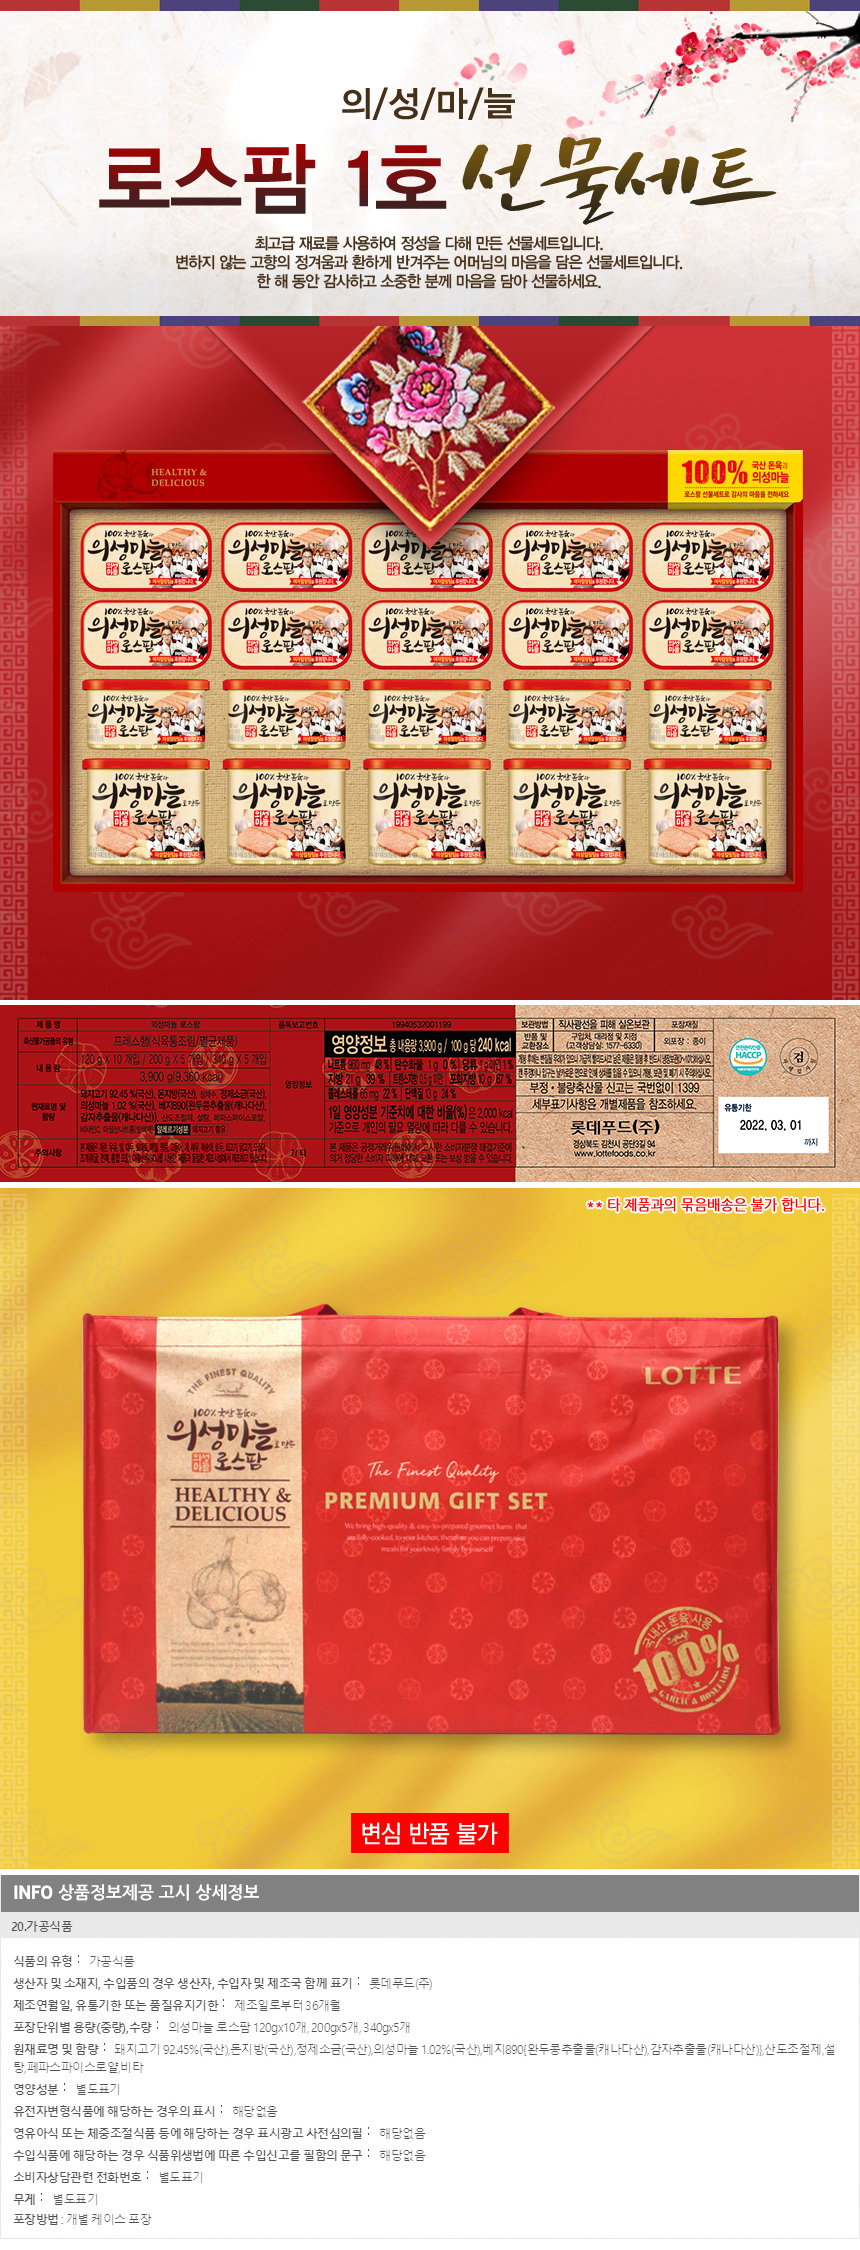 (롯데푸드)의성마늘 로스팜 1호 선물세트/설 추석선물